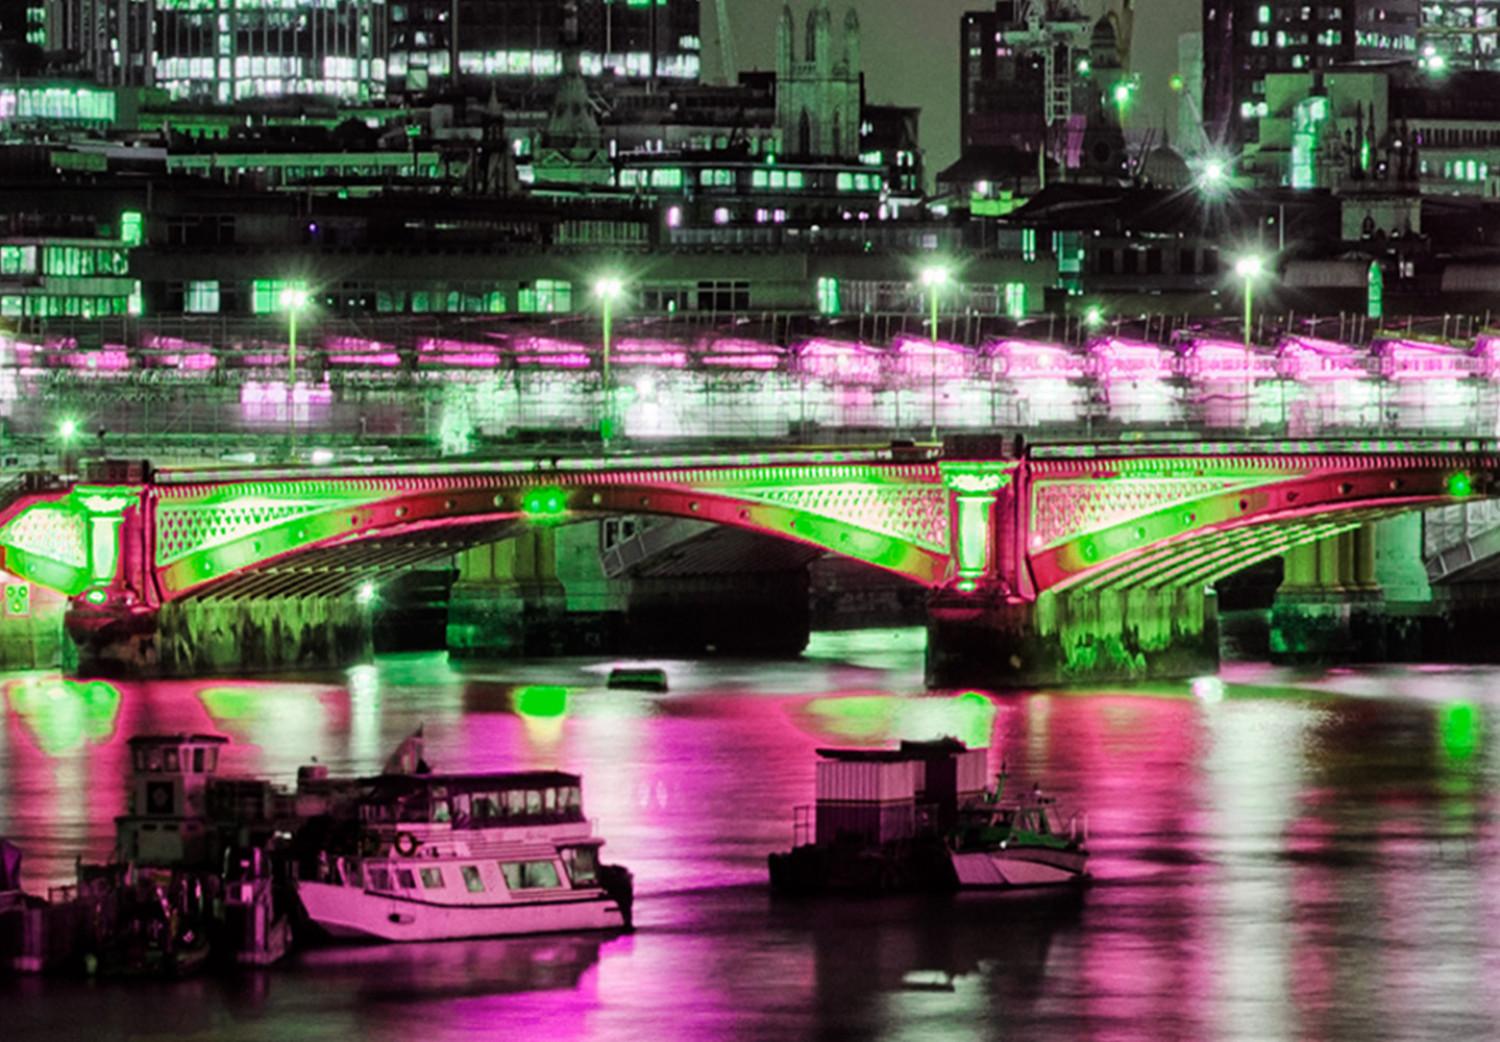 Cuadro Támesis nocturno - panorama de Londres iluminado con catedral y puente